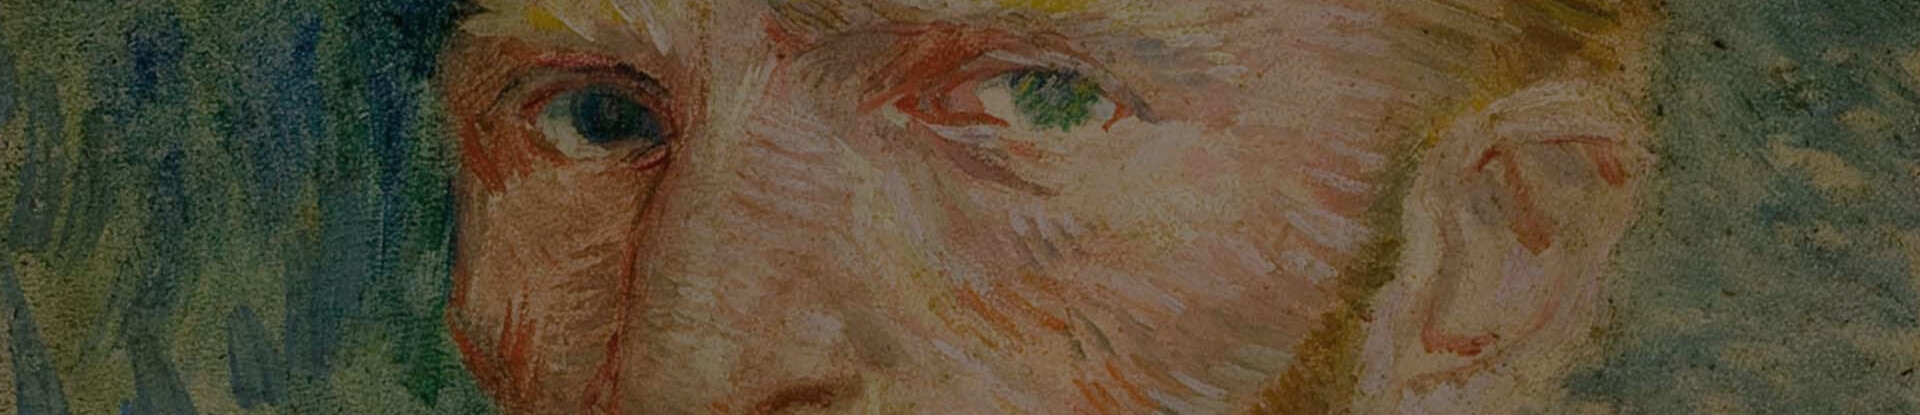 Dettaglio dell'autoritratto di Van Gogh esposto alla mostra di Roma 2022